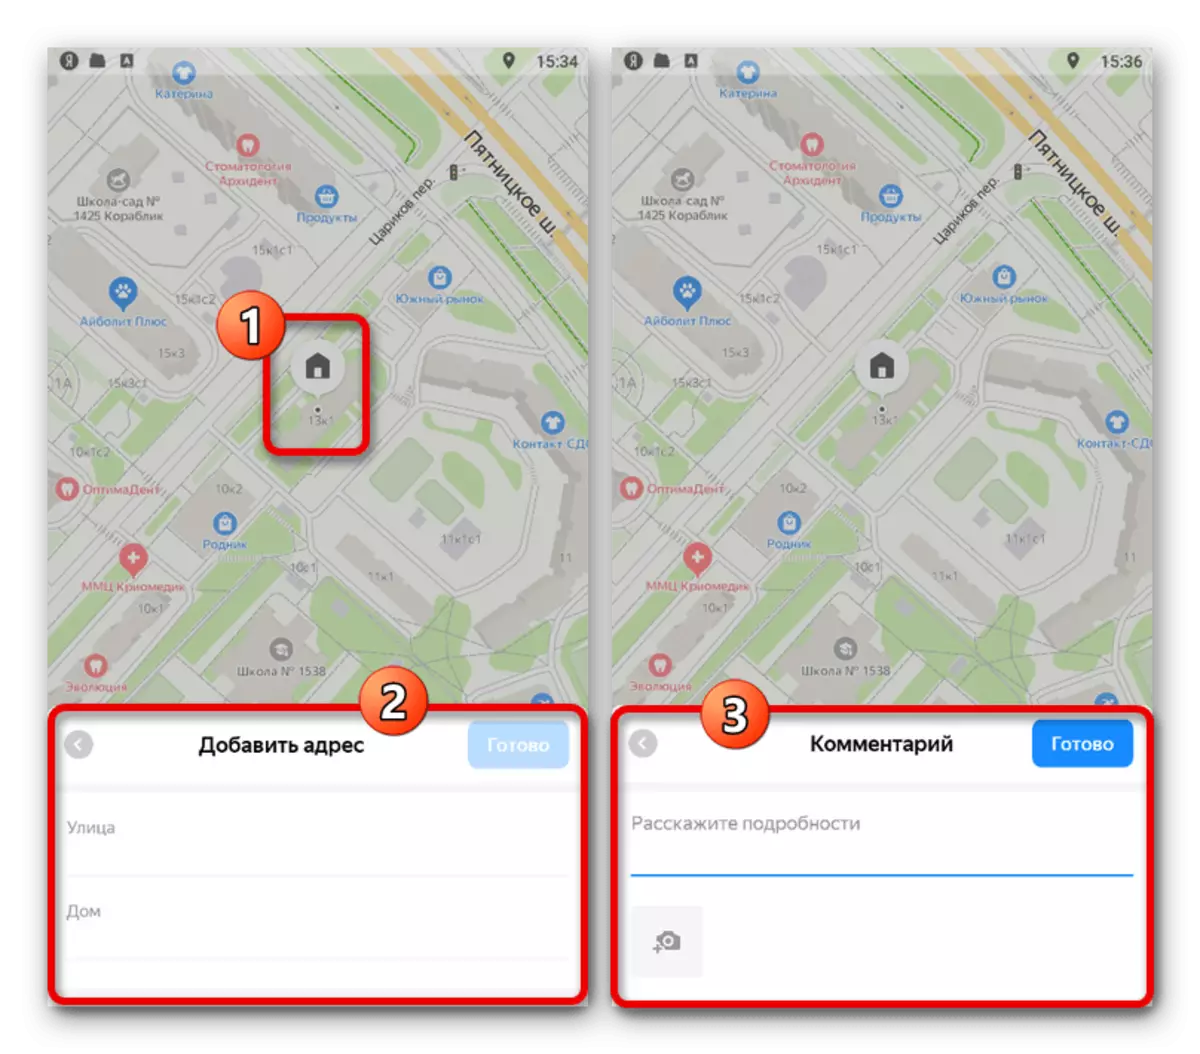 Menambah butiran mengenai objek dalam aplikasi Yandex.Maps